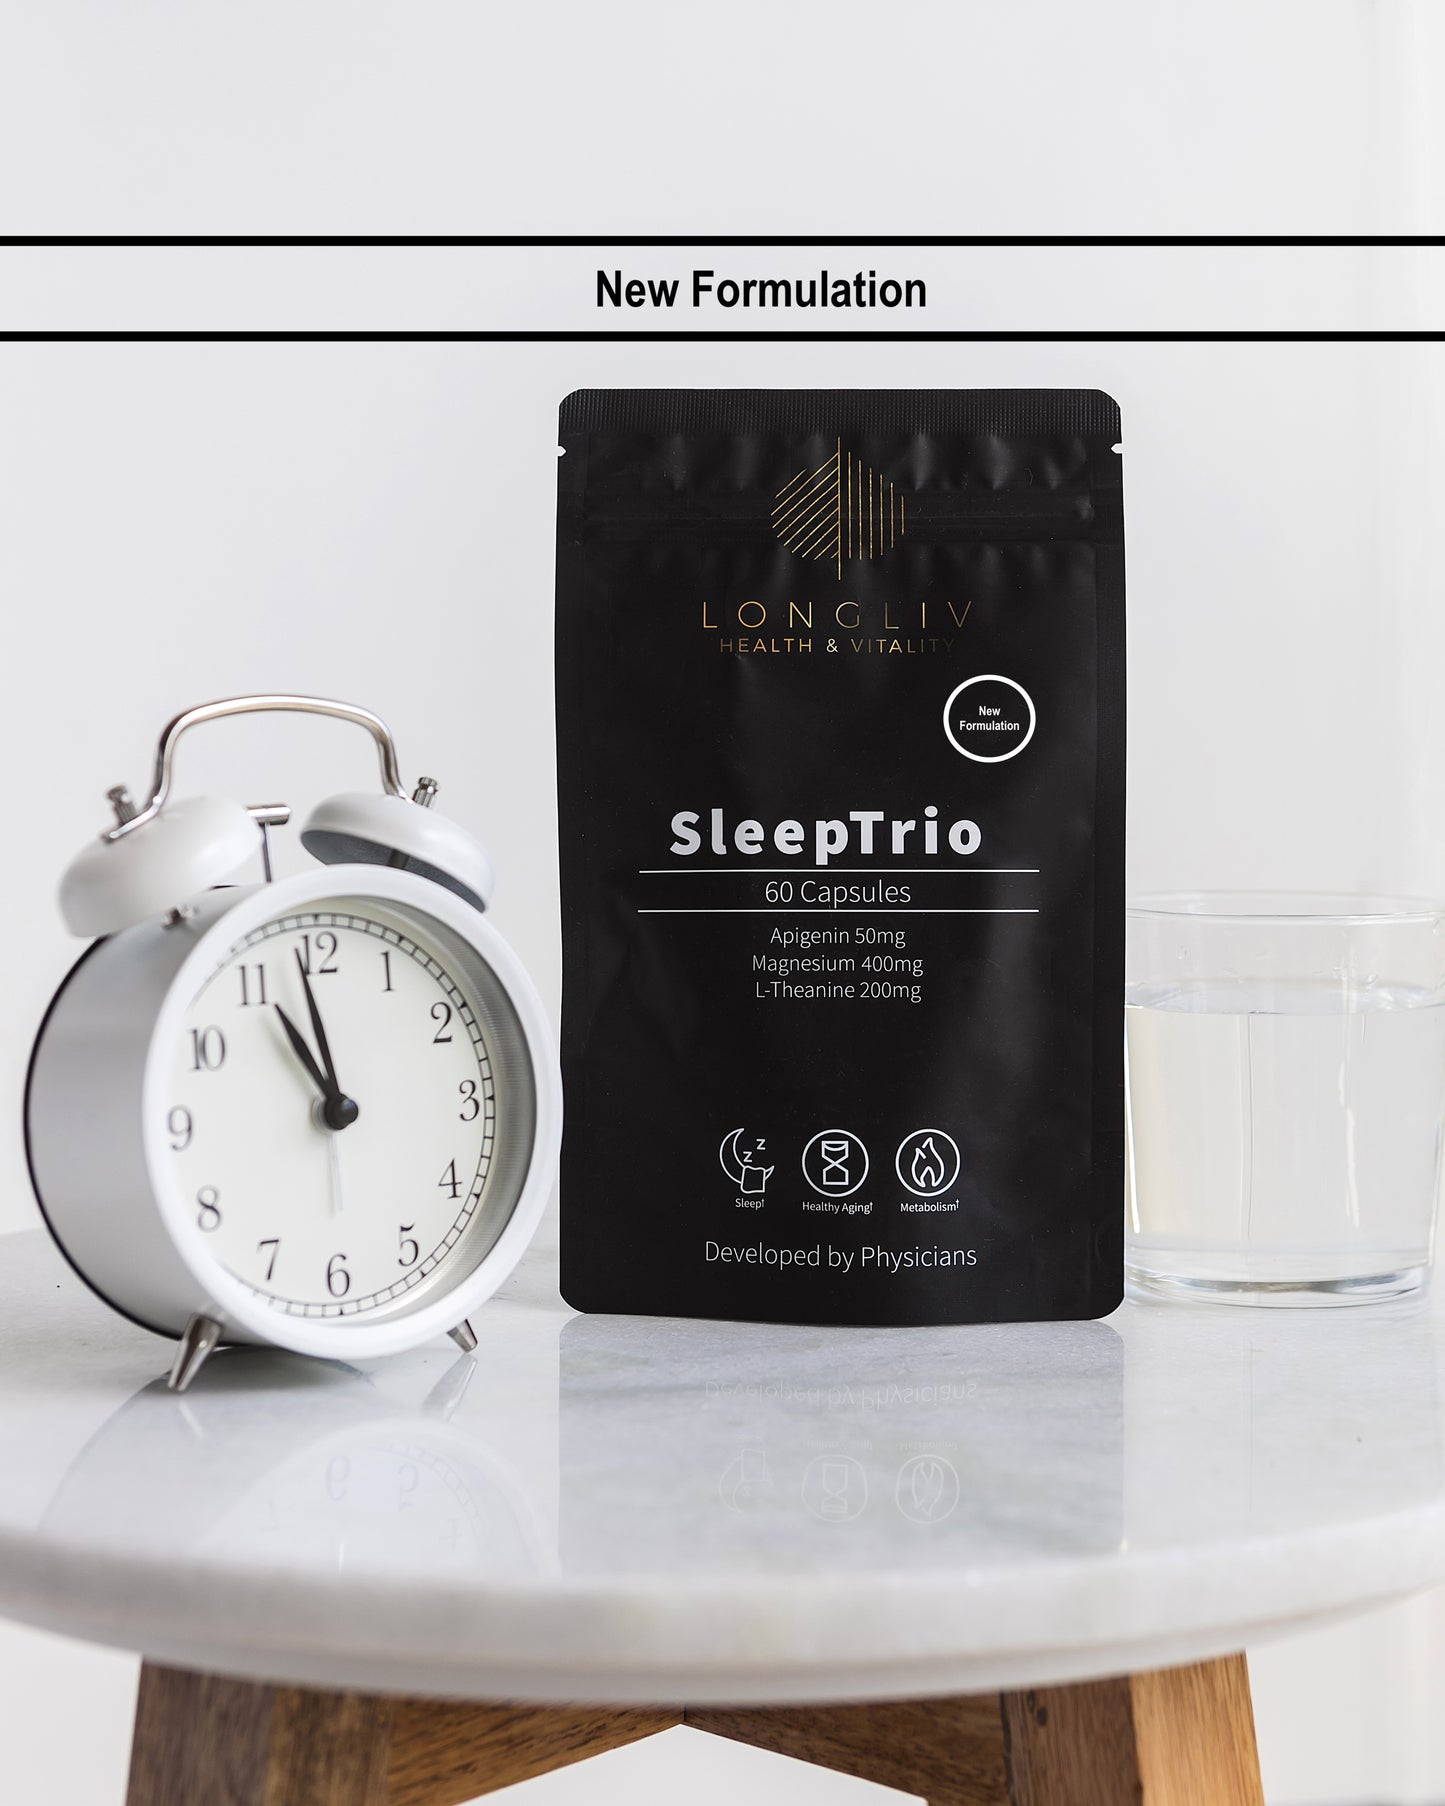 SleepTrio New Formulation